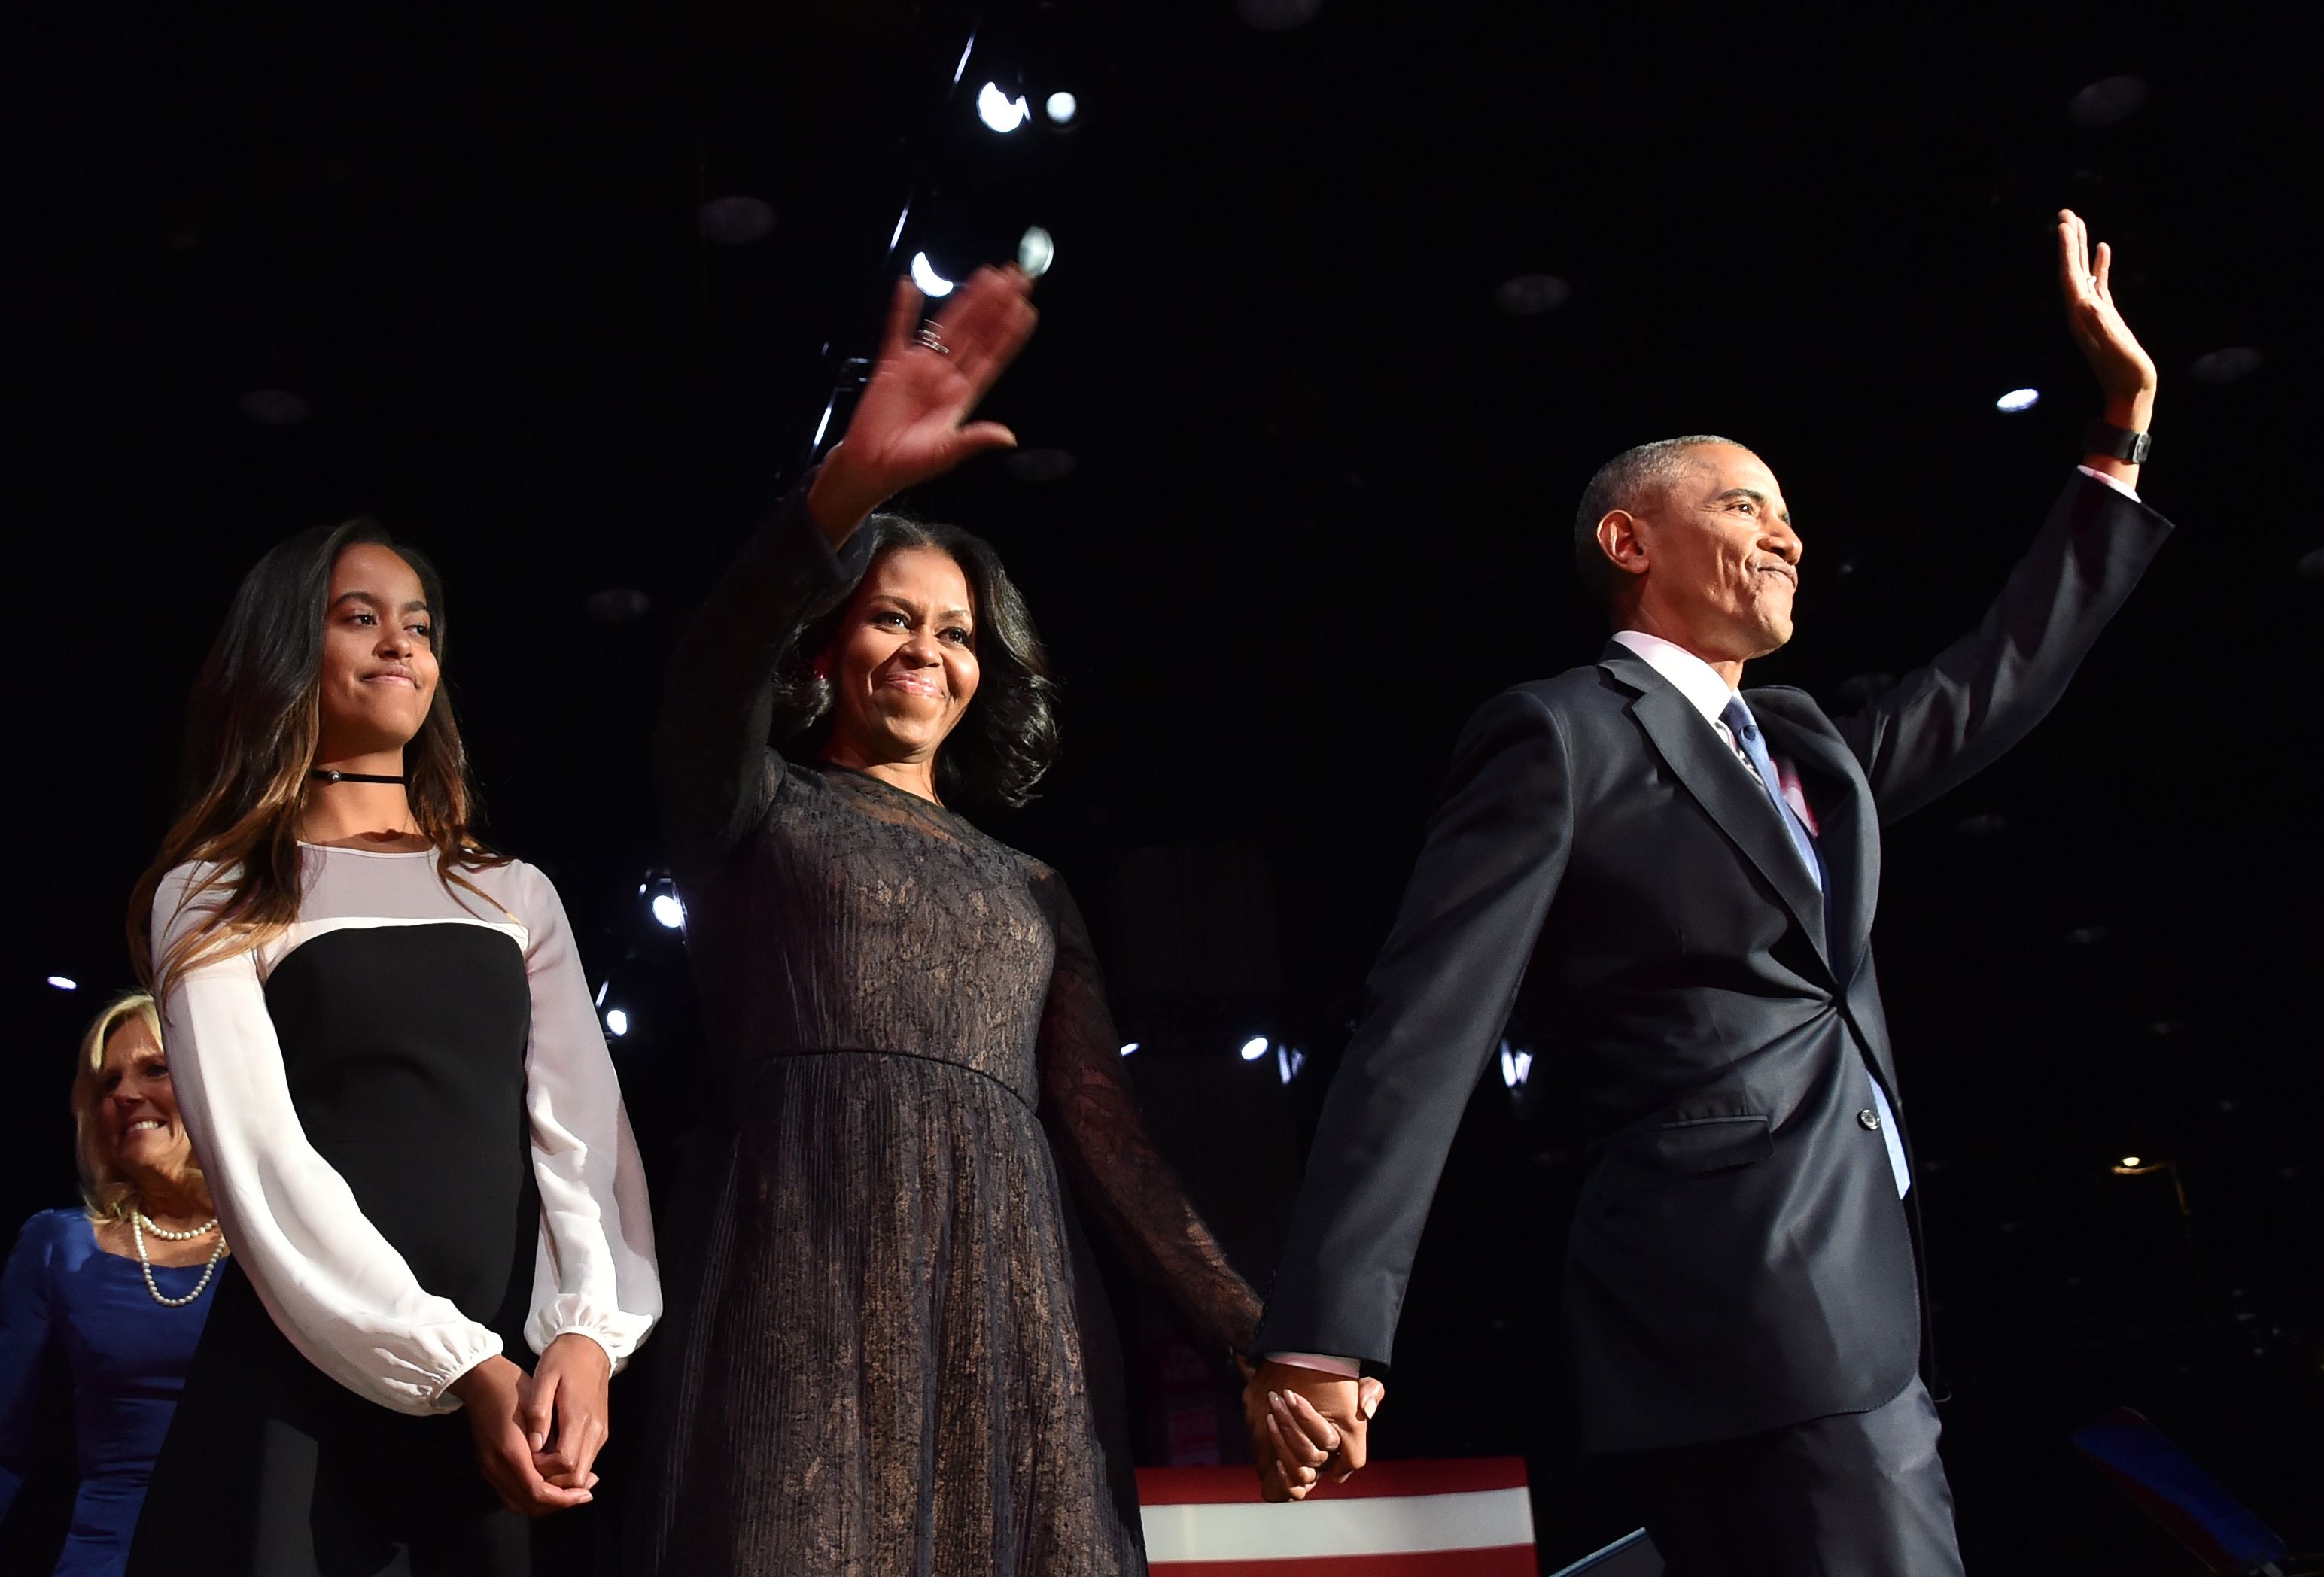 Malia schaut in die Menge, während Michelle Obama und Barack Obama am 10. Januar 2017 in Chicago, Illinois, ihren Unterstützern zuwinken. | Quelle: Getty Images